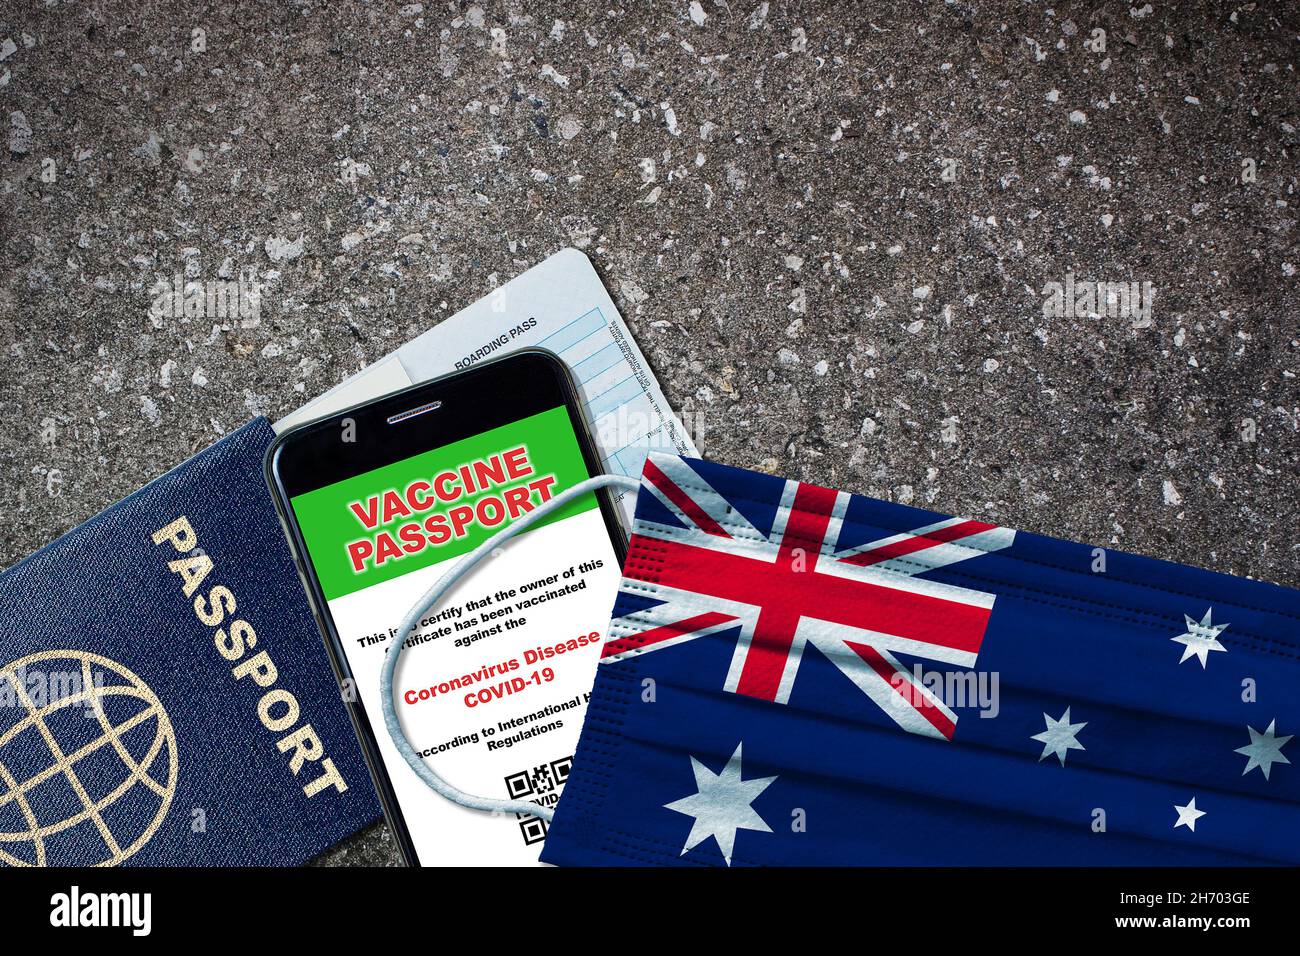 Australia nuovo viaggio normale con passaporto, vaccino digitale su smartphone, carta d'imbarco e maschera facciale con bandiera australiana. Vaccino passaporto concetto w Foto Stock